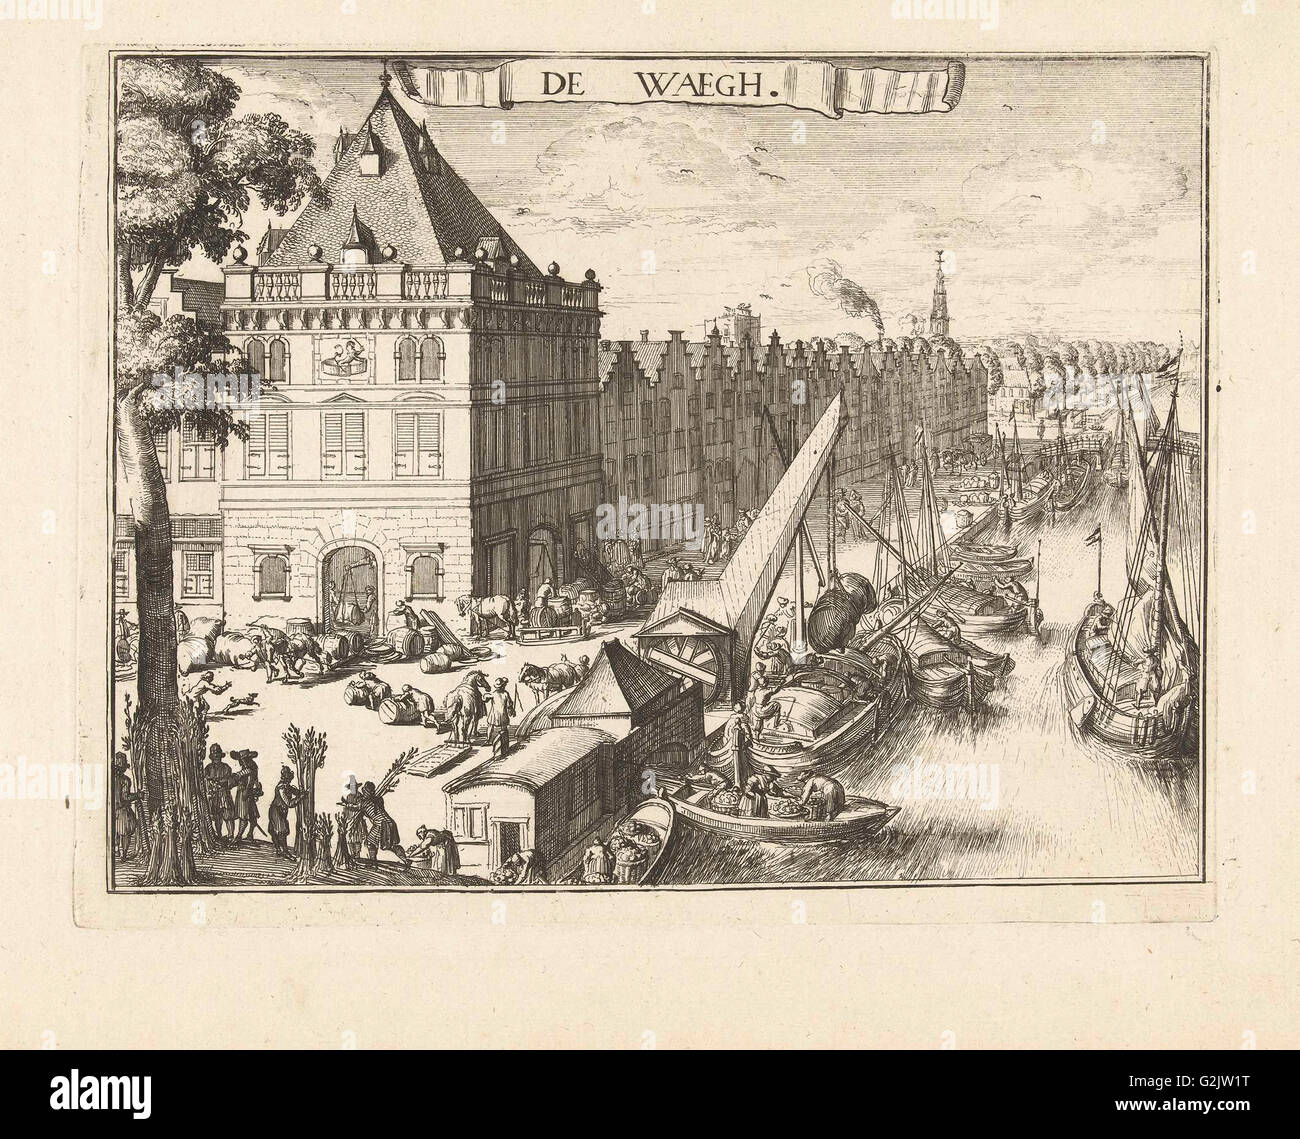 Vue de la Waag à Haarlem, Romeyn de Hooghe, 1688-1689, les Pays-Bas Banque D'Images